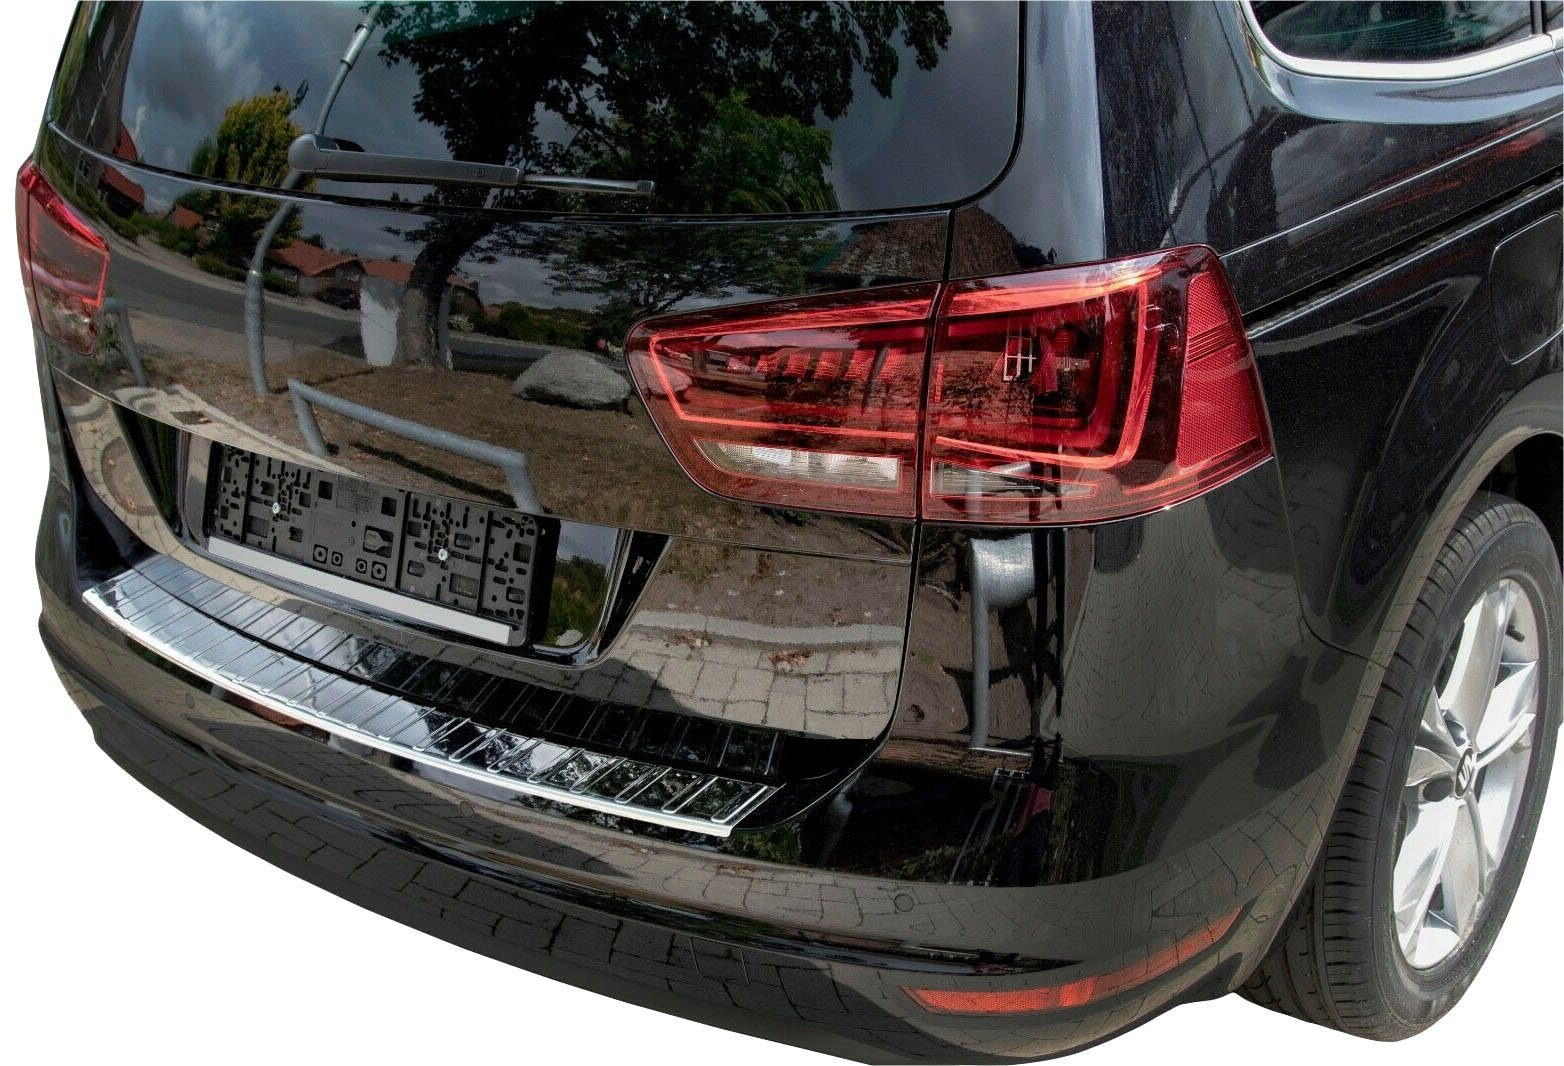 RECAMBO Ladekantenschutz, Zubehör für VW SHARAN II, SEAT ALHAMBRA II, ab 2010, Edelstahl chrom poliert